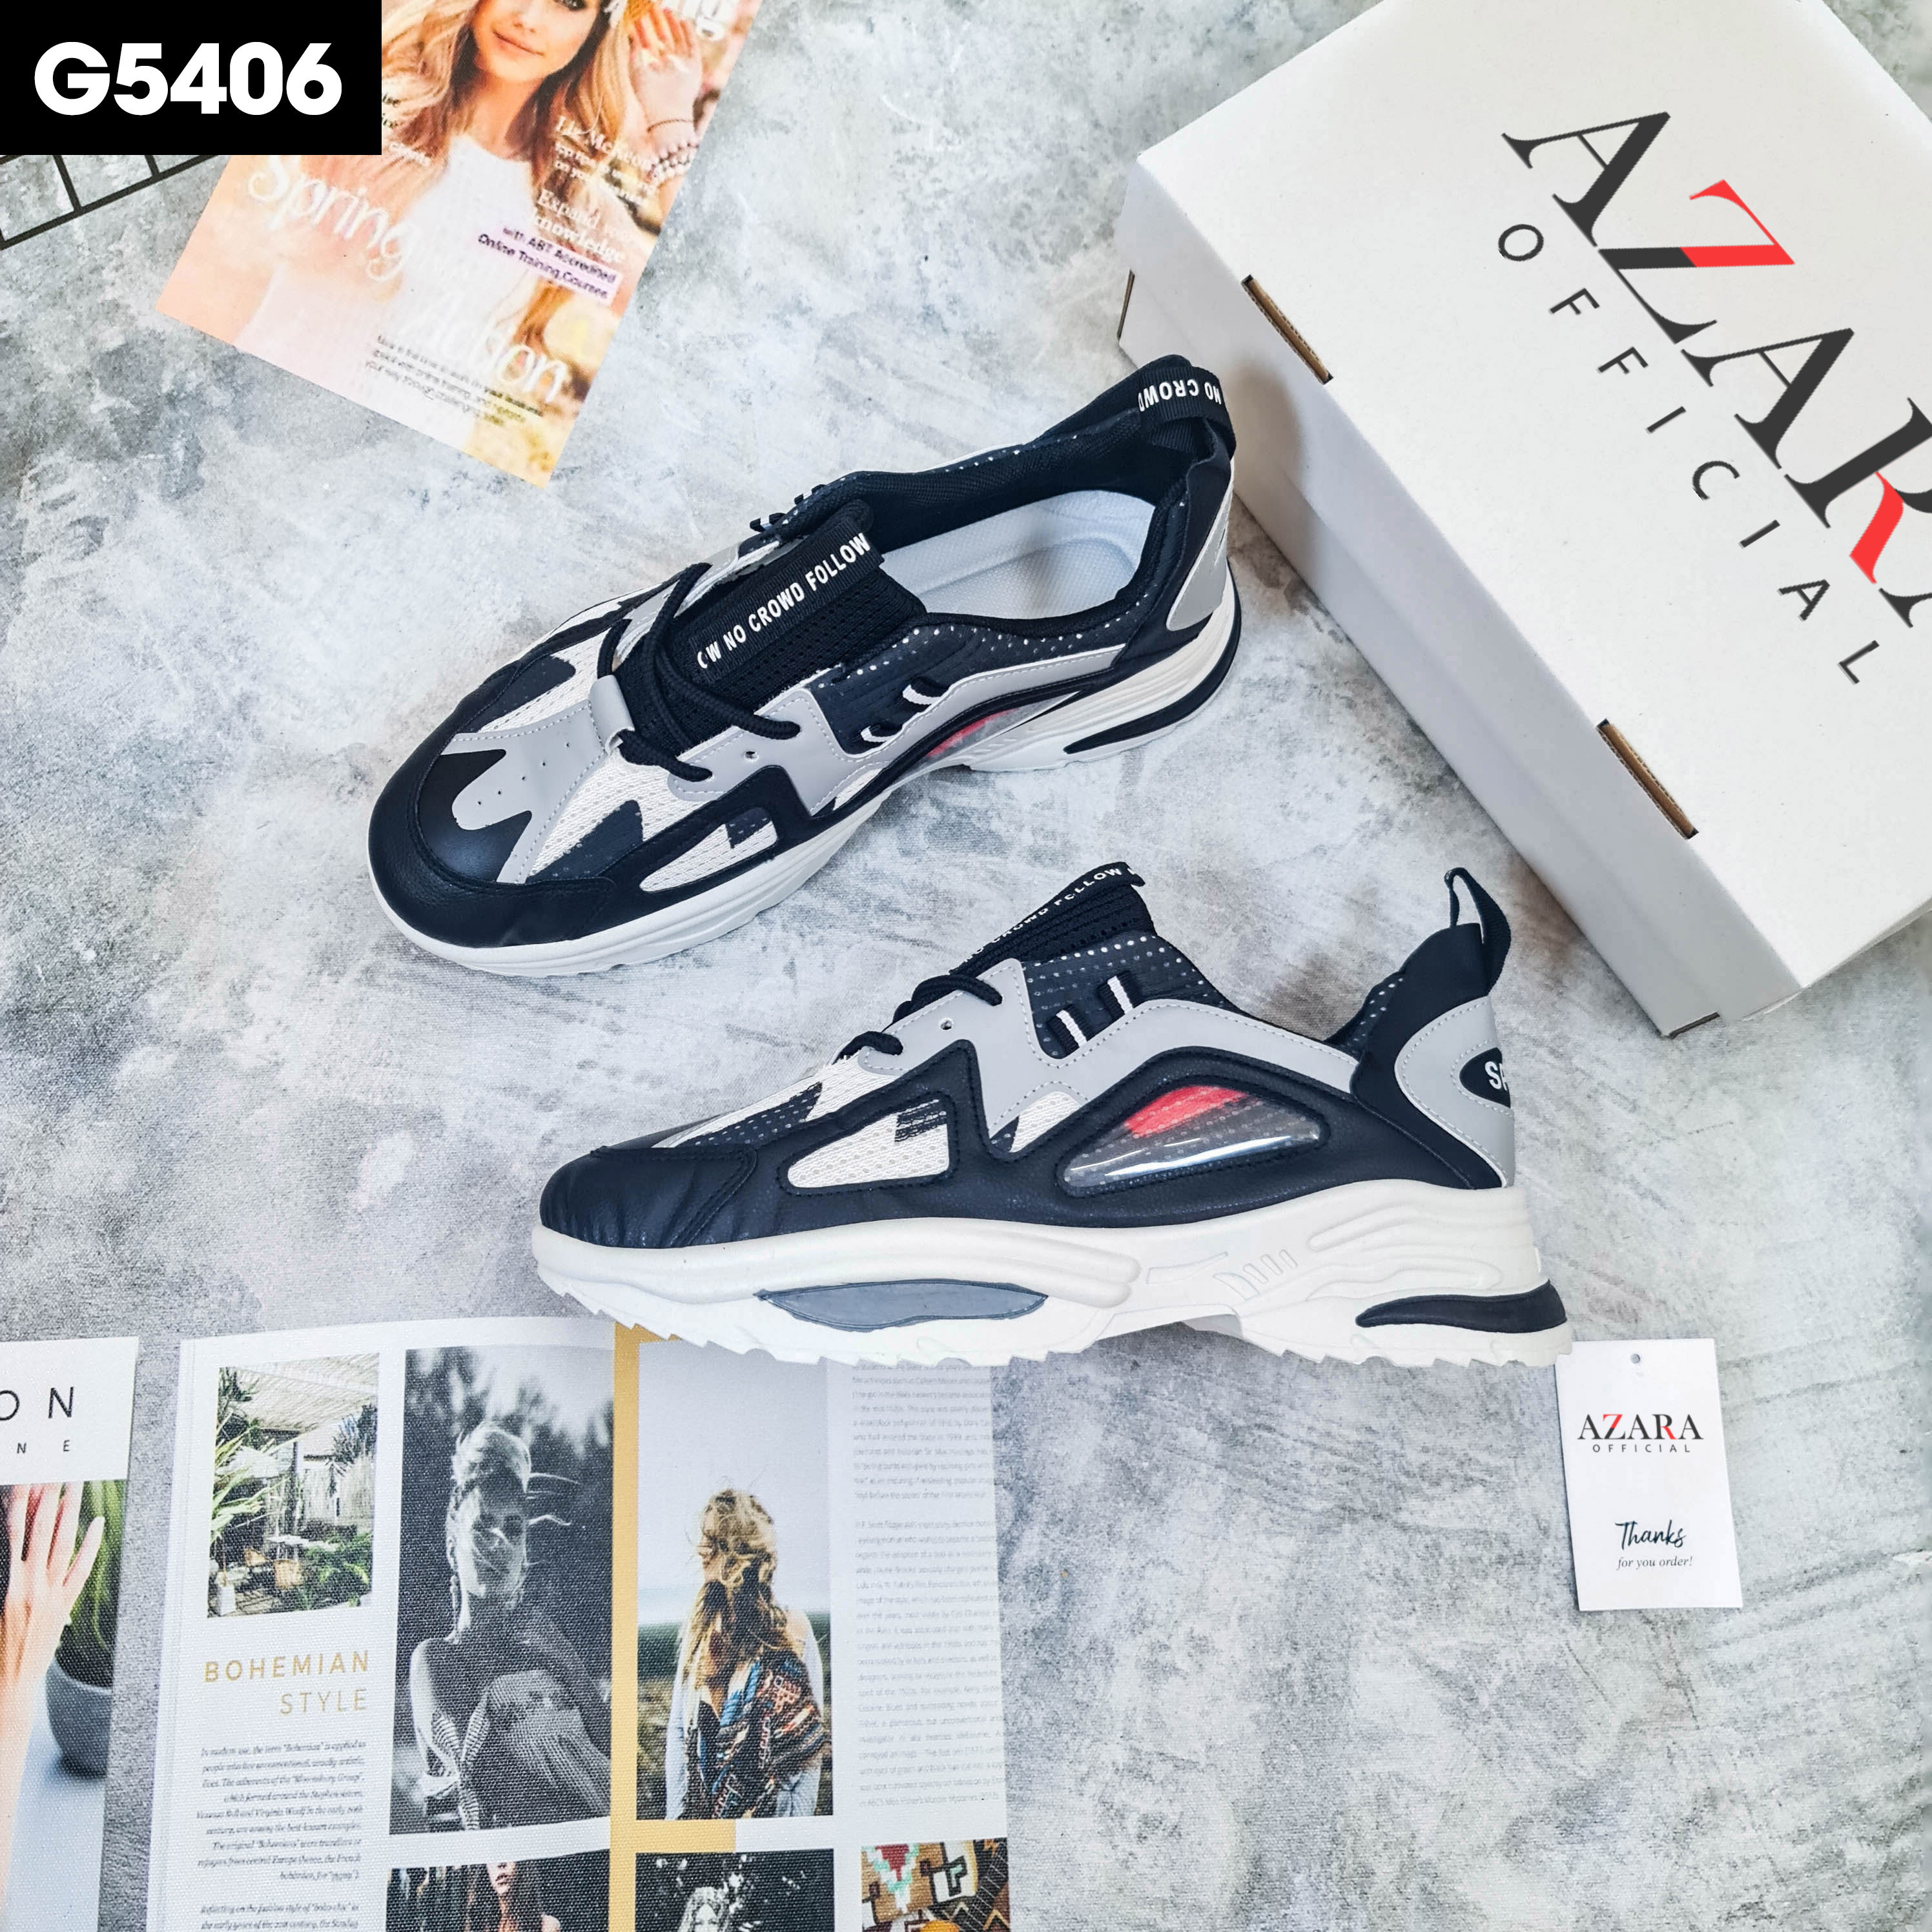 Giày Thể Thao Nam AZARA- Sneaker Màu Đen - Trắng, Giày Thể Thao, Đế Nhẹ, Chống Sốc, Phù Hợp Mọi Lứa Tuổi - G5406